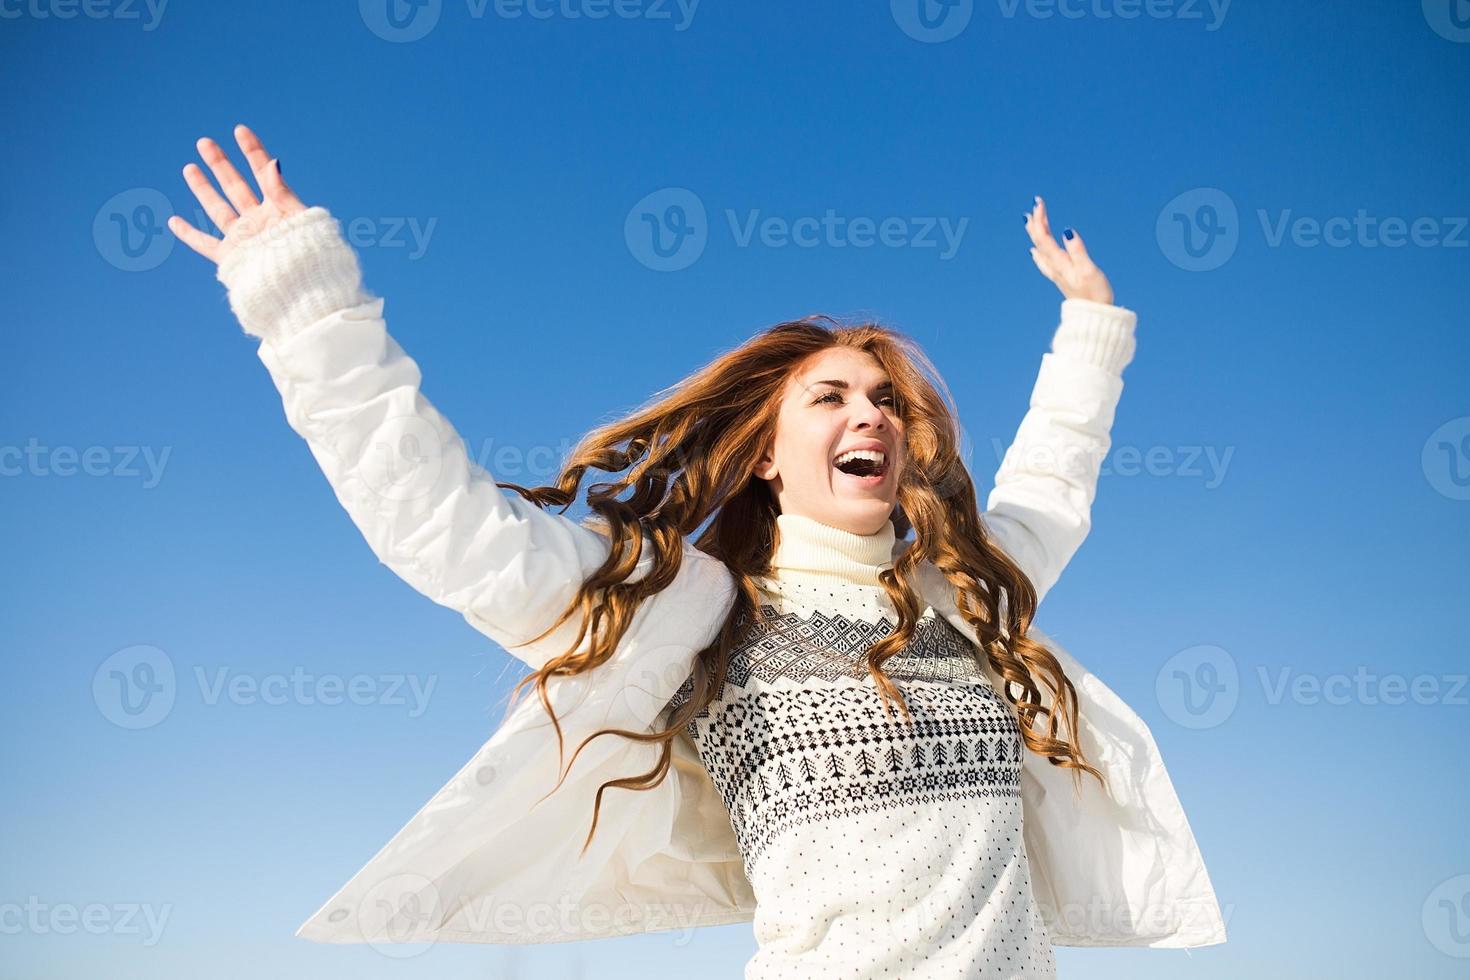 felice giovane donna divertirsi e godersi la neve fresca foto